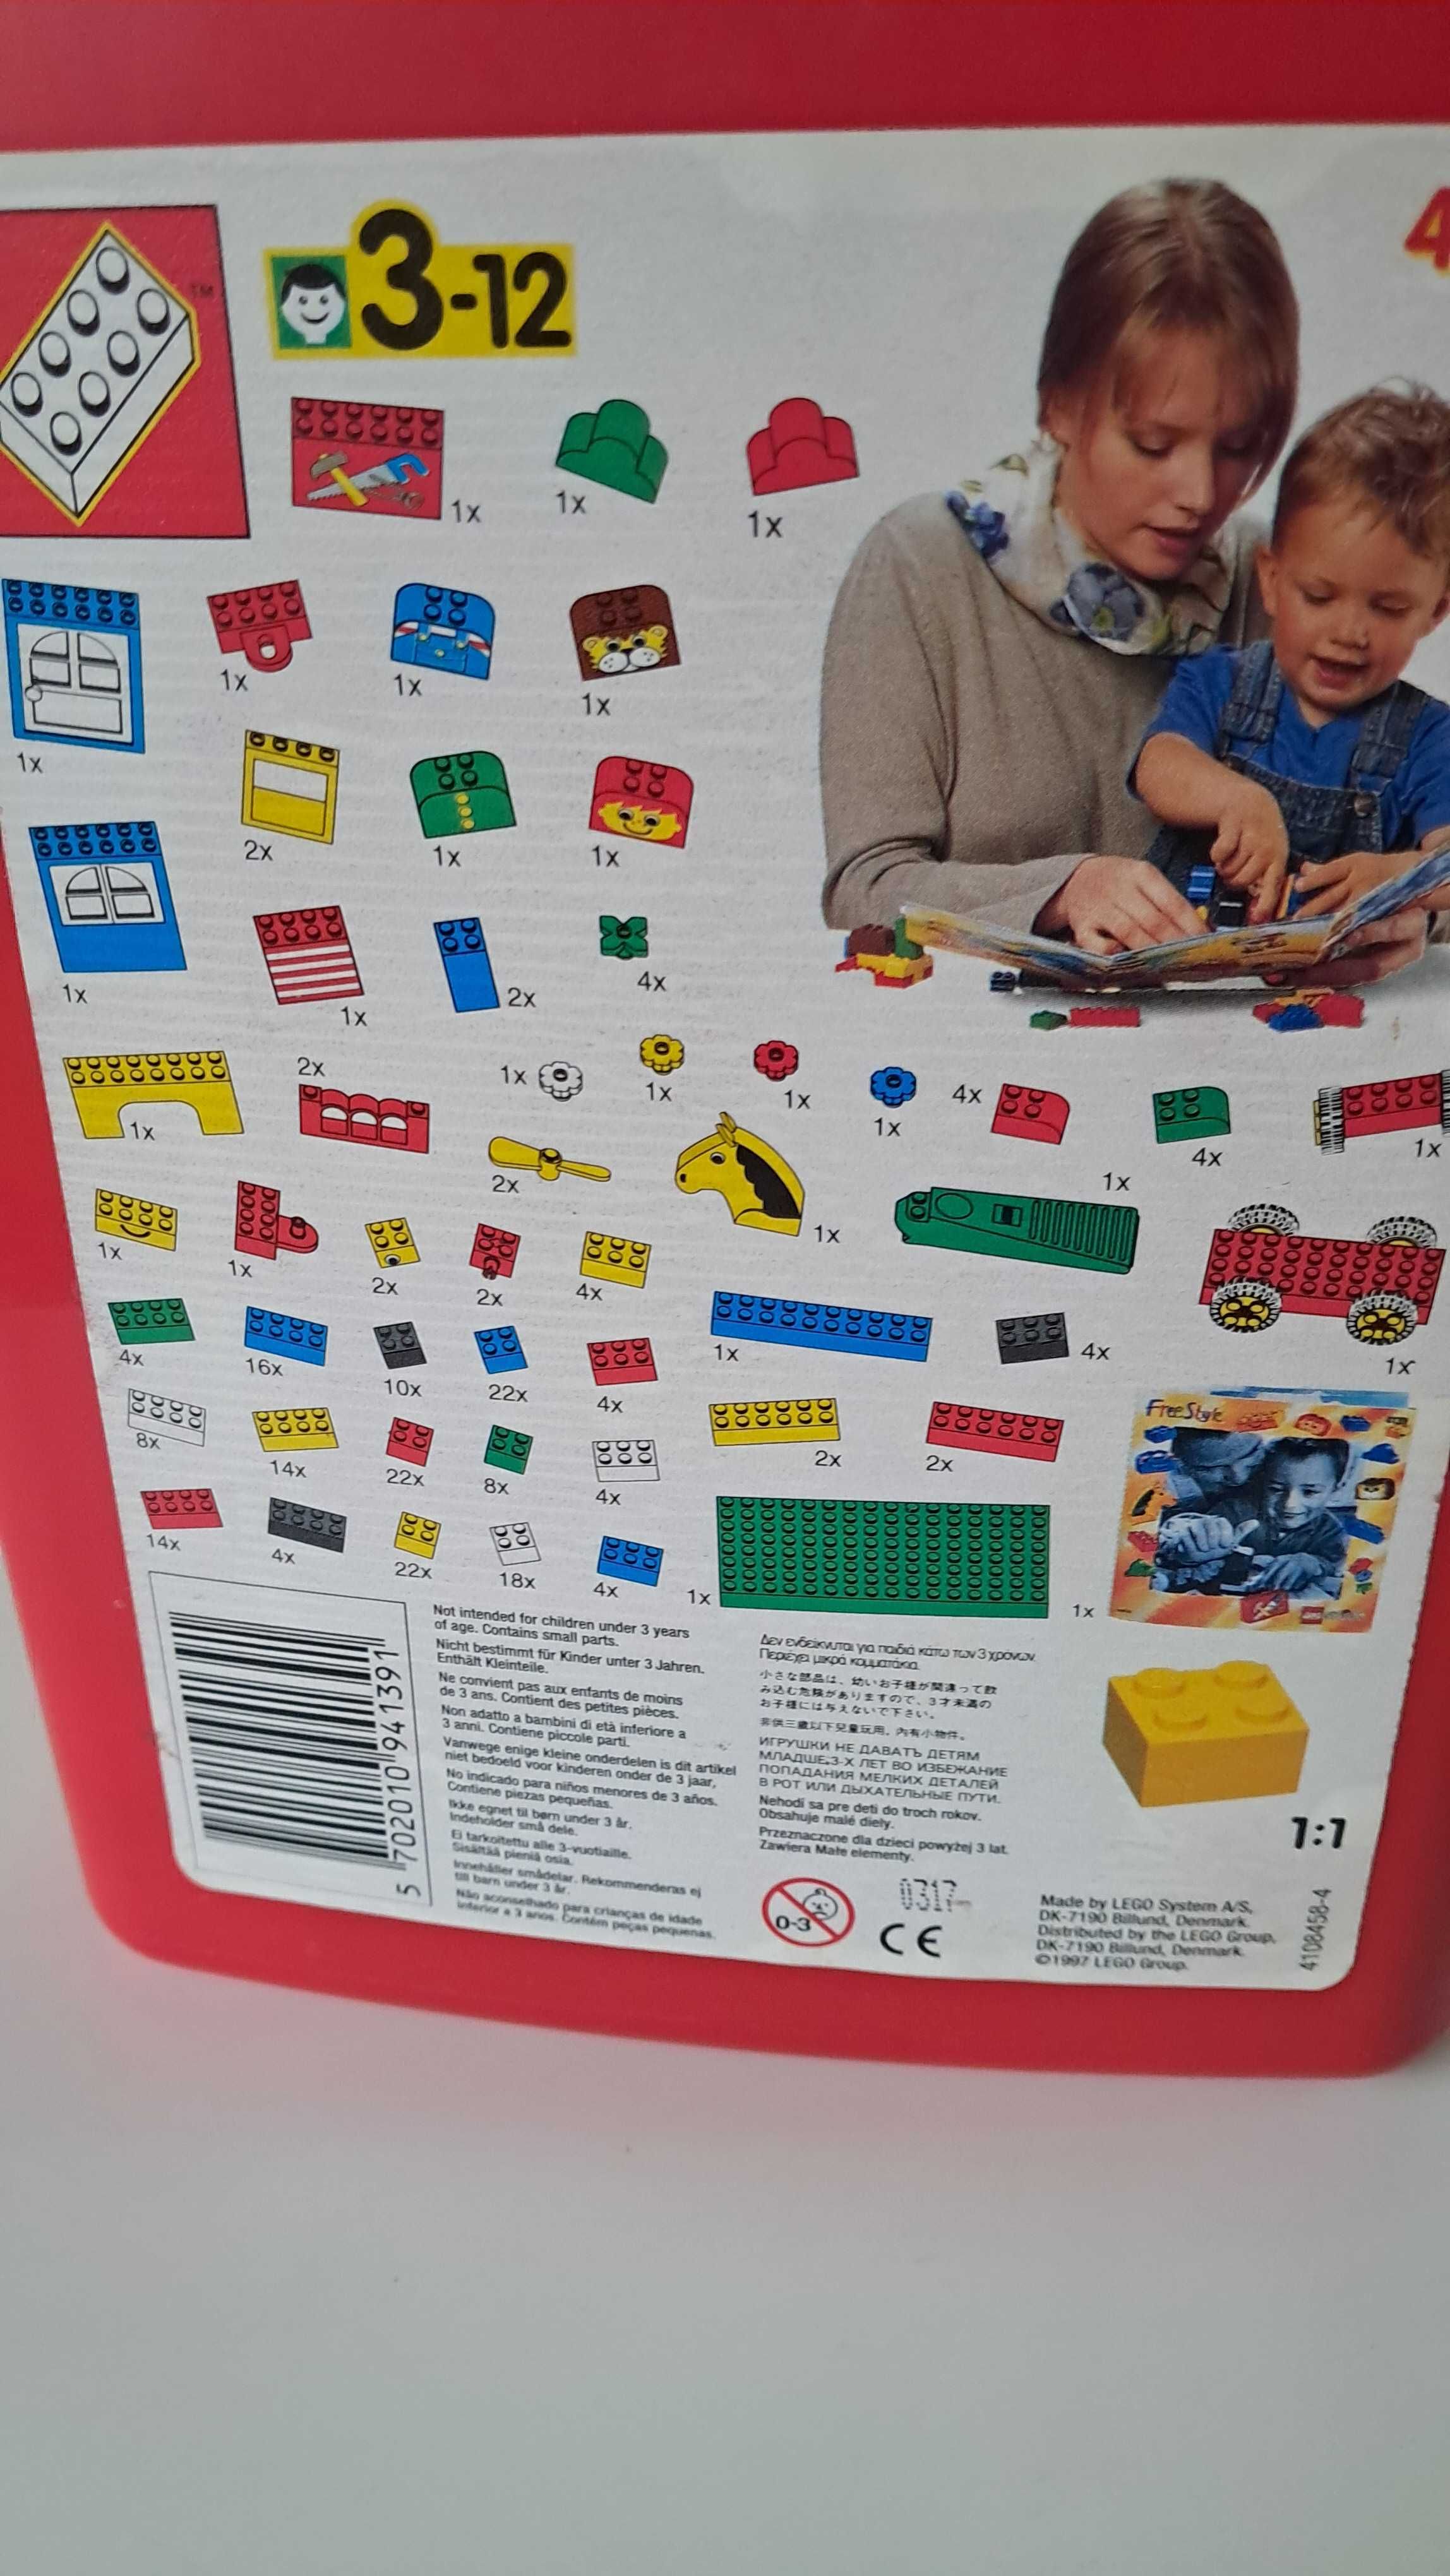 Zestaw Lego 4139 kompletny z pudełkiem 1997